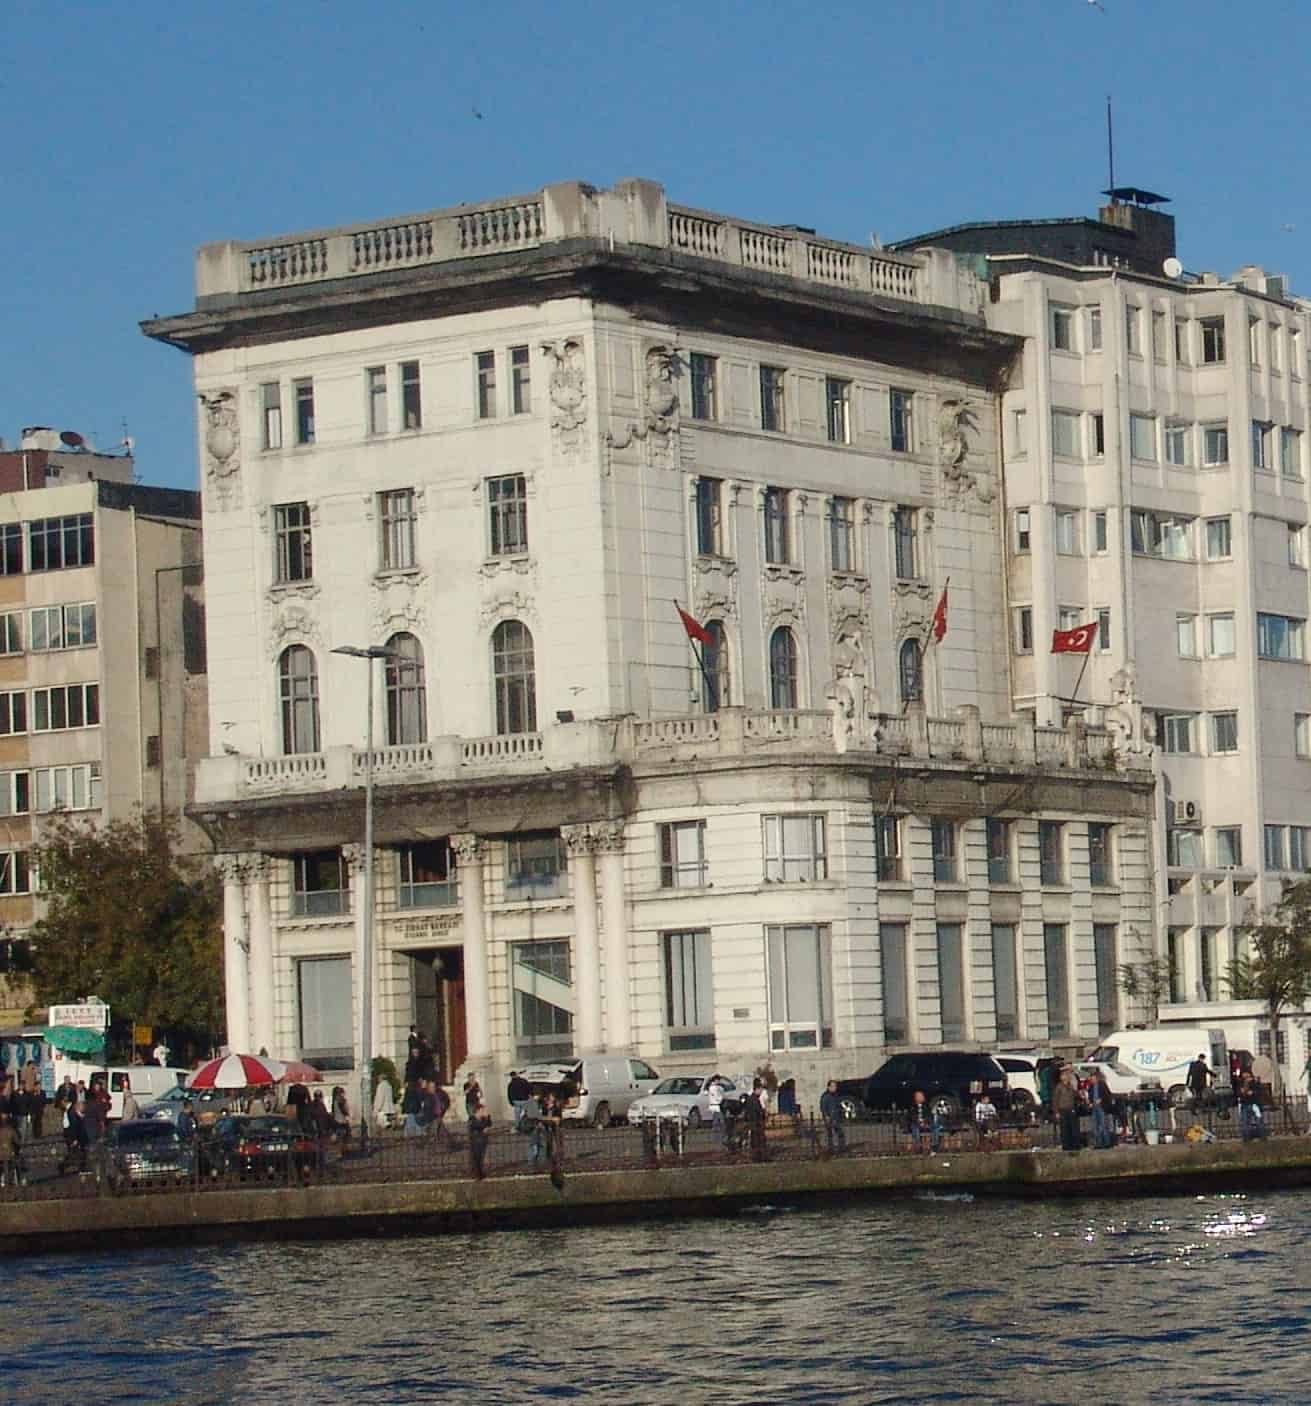 Ziraat Bank Building in November 2010